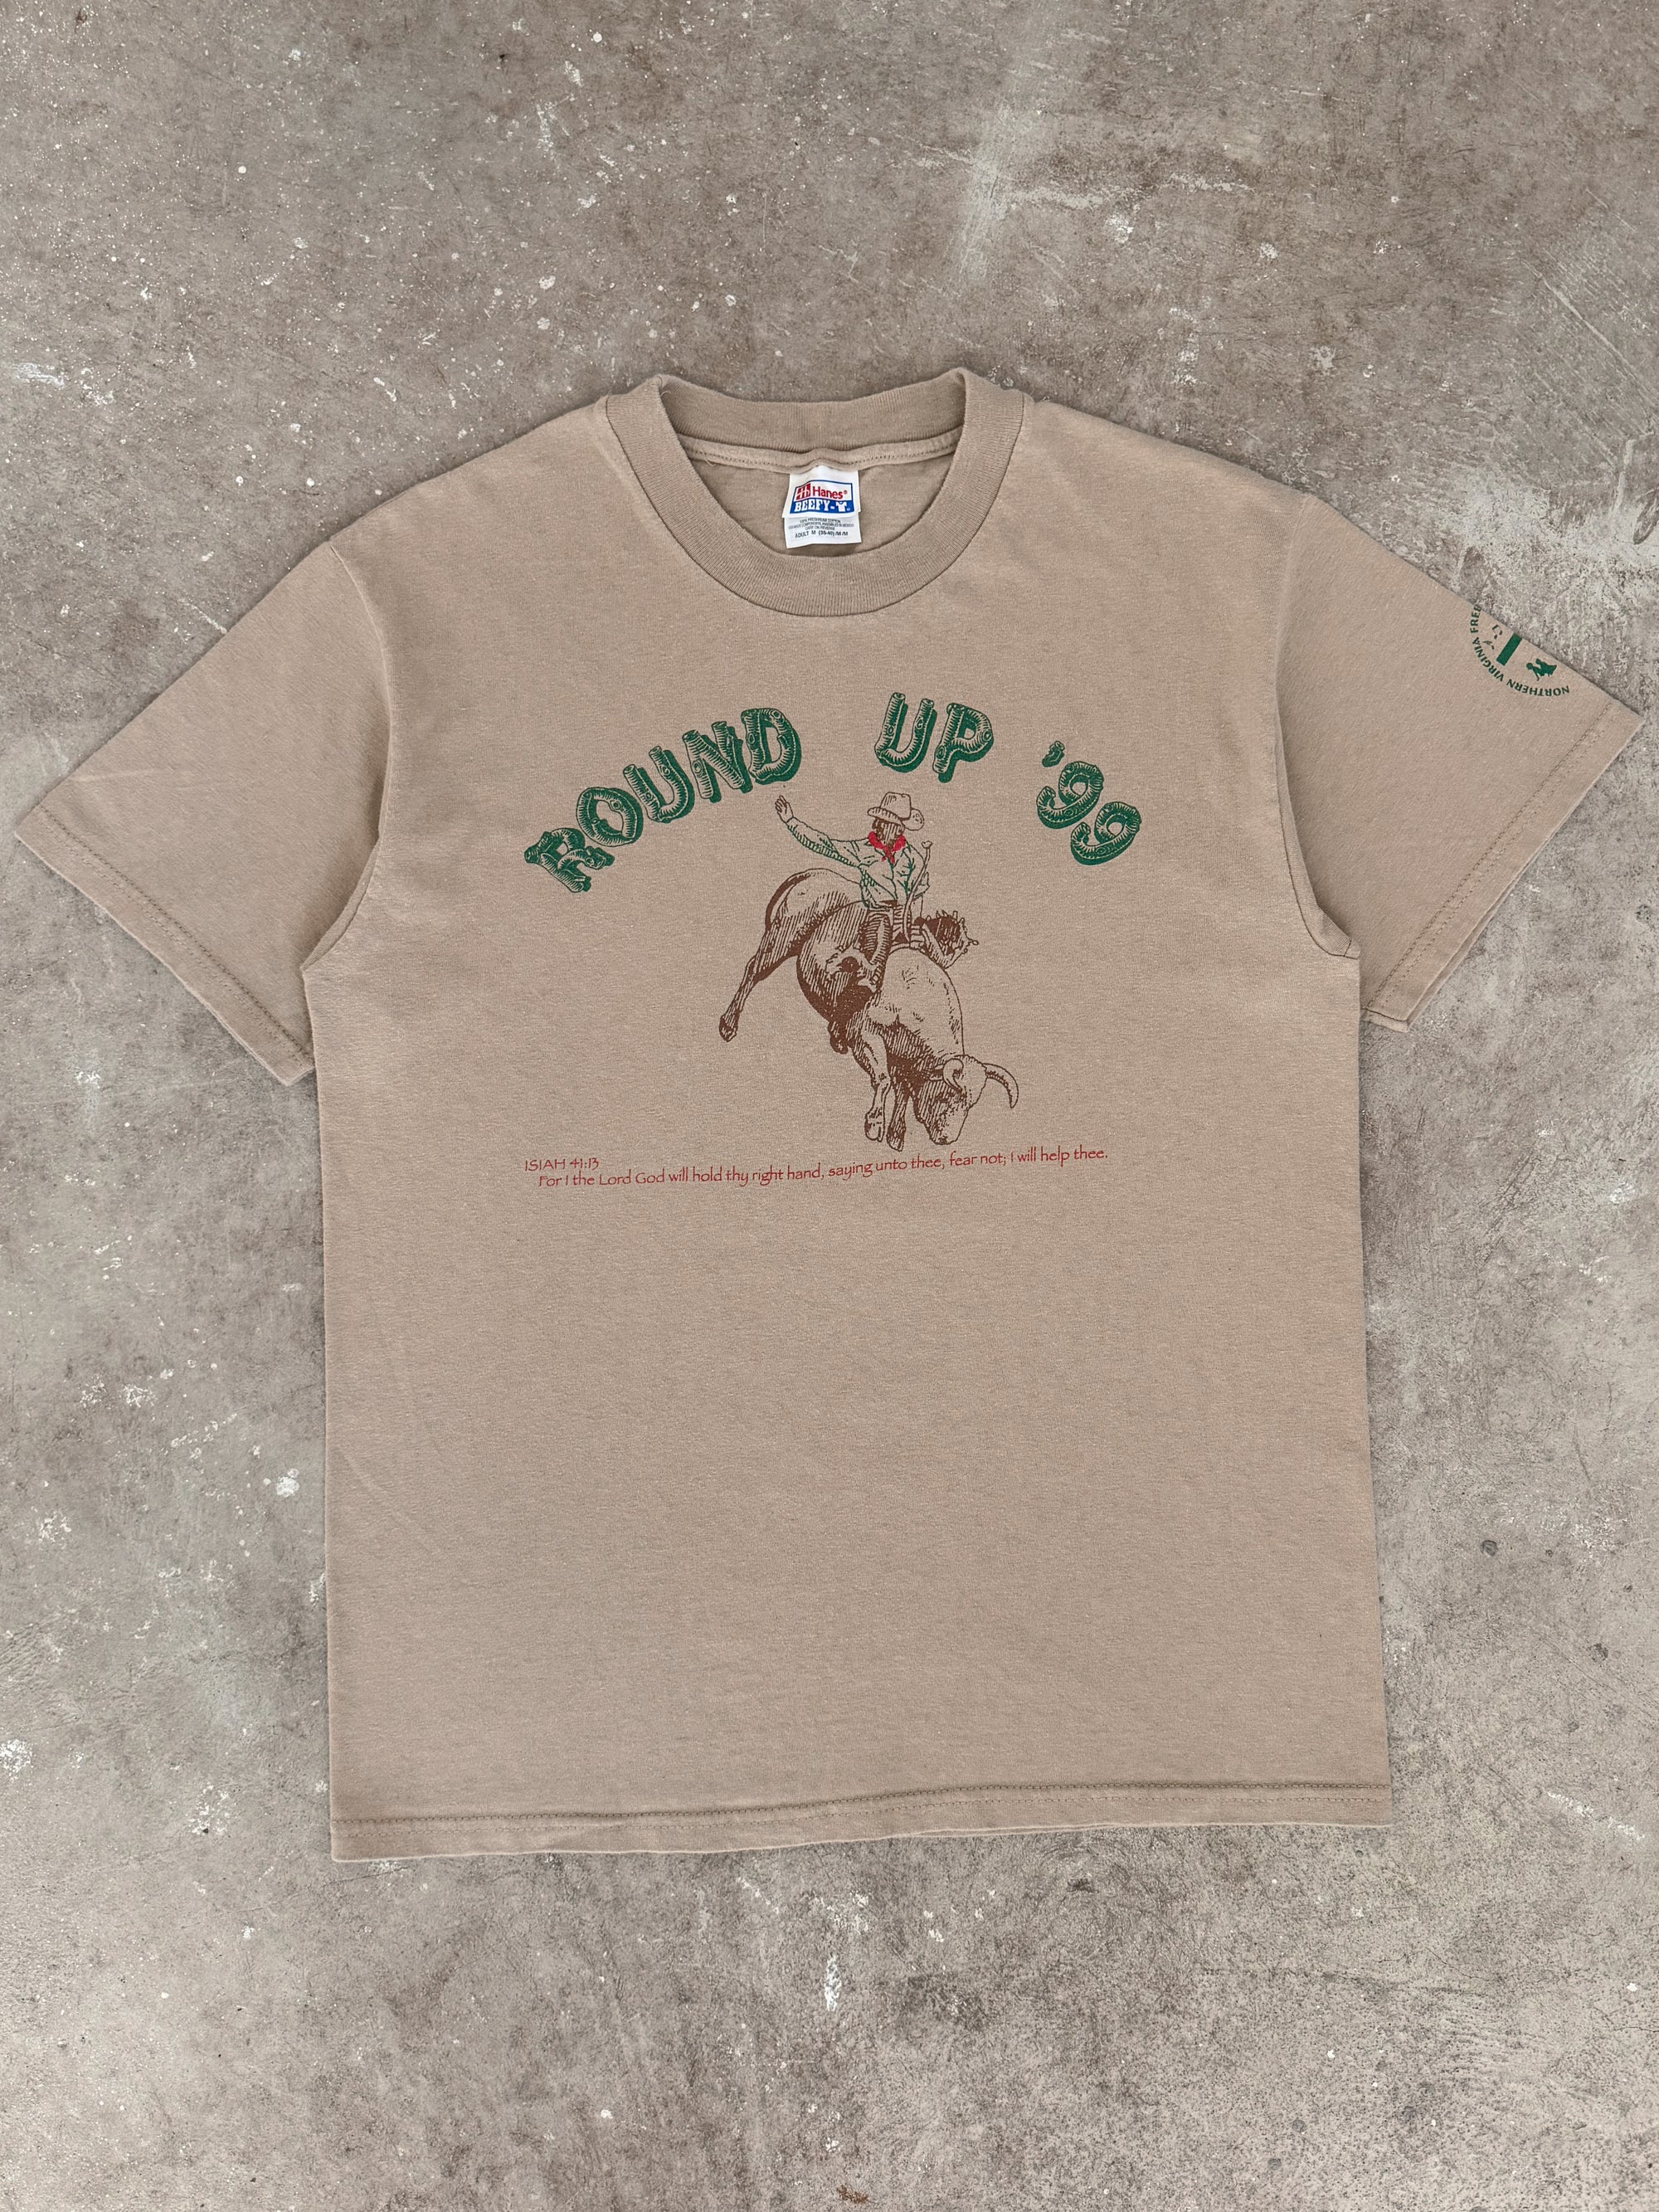 1990s "Round Up" Tee (M)